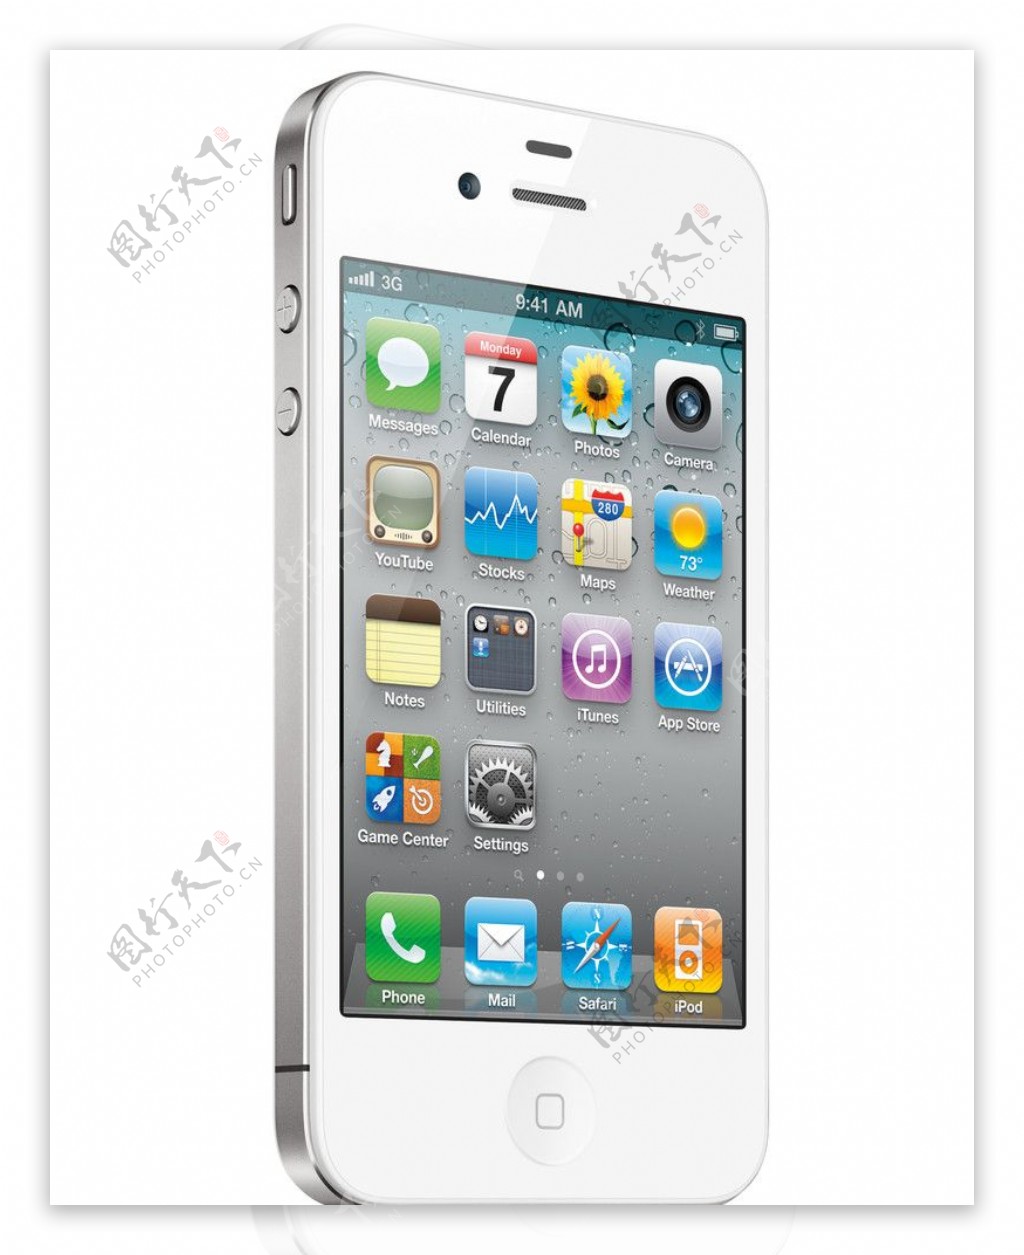 iPhone4苹果手机高清广告图图片